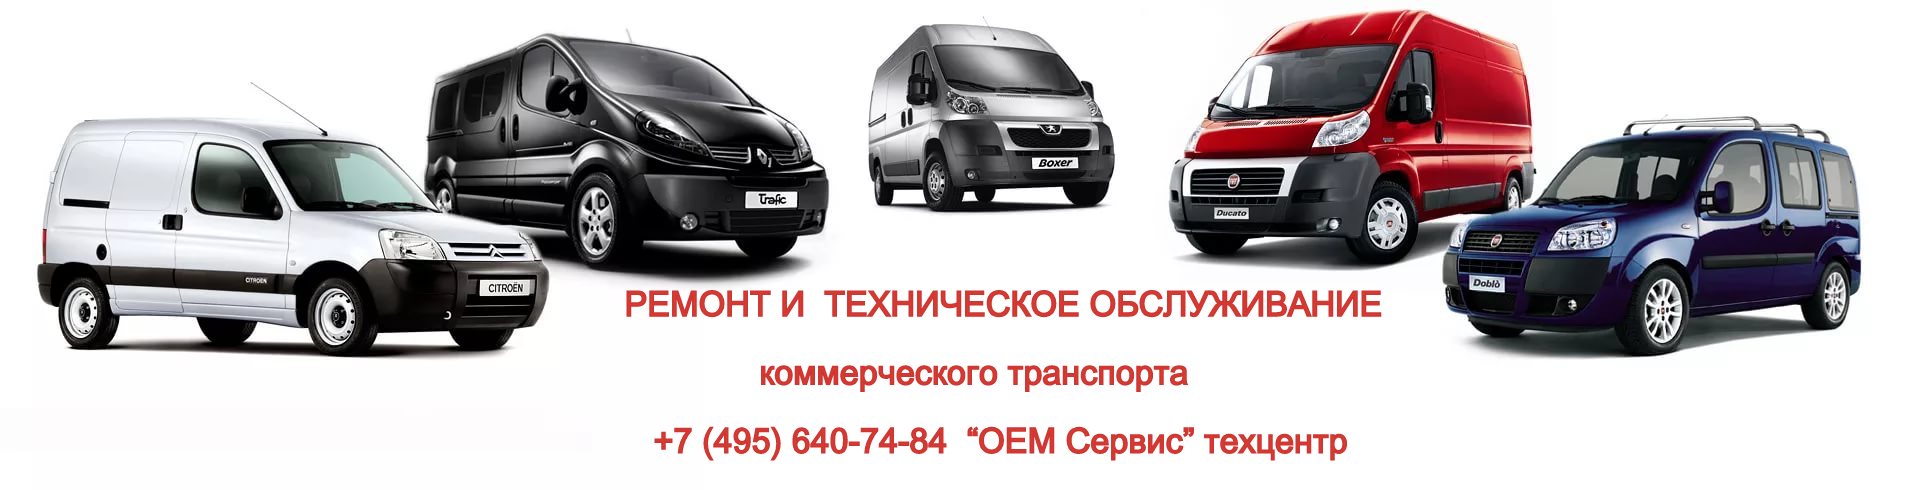 Сервис по ремонту коммерческого дизельного транспорта в Москве